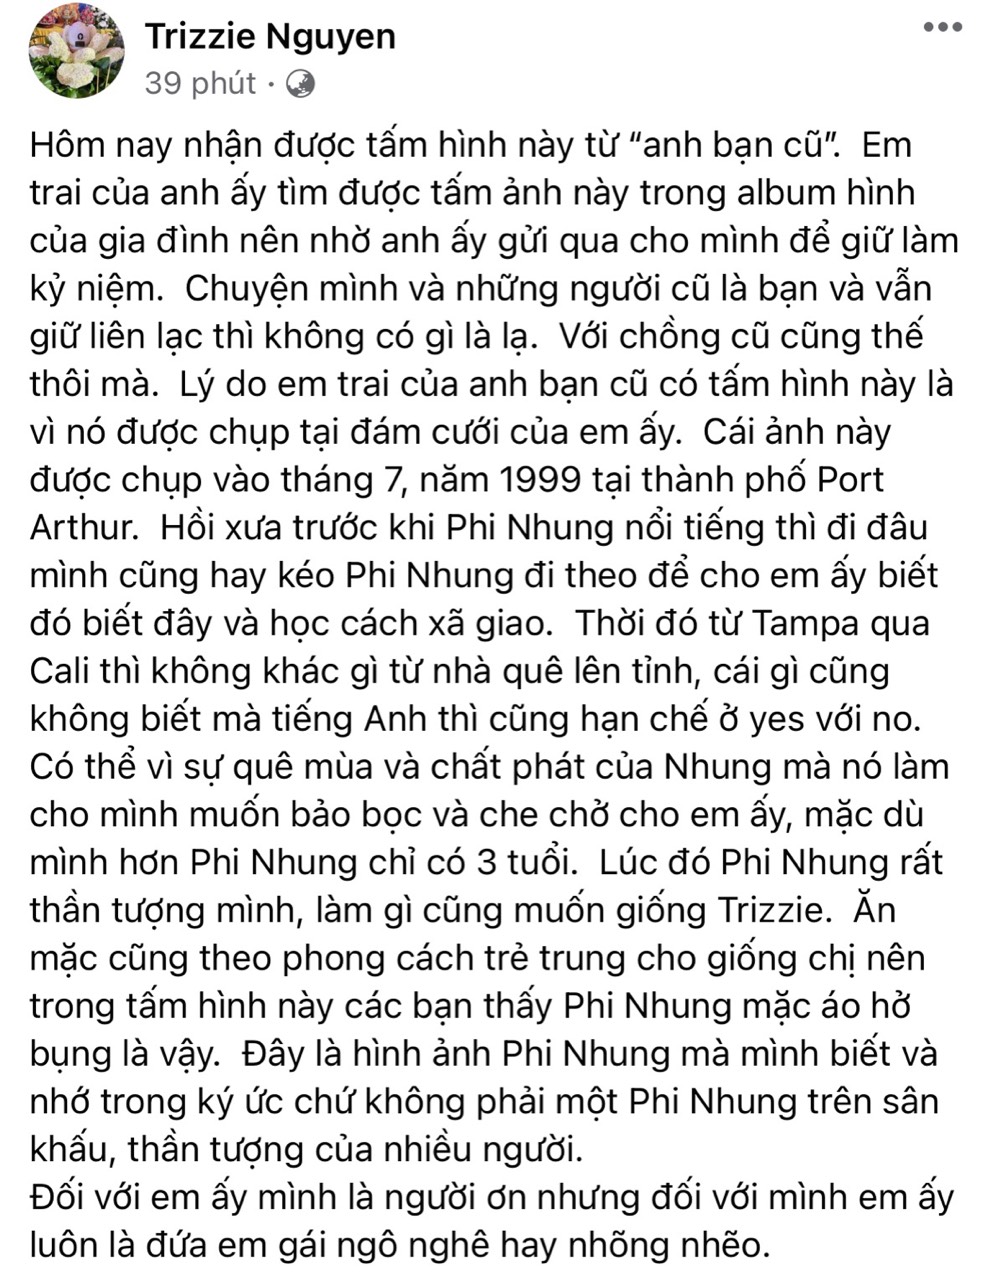 Bài đăng dài của Trizzie Phương Trinh được đăng tải cách đây ít phút